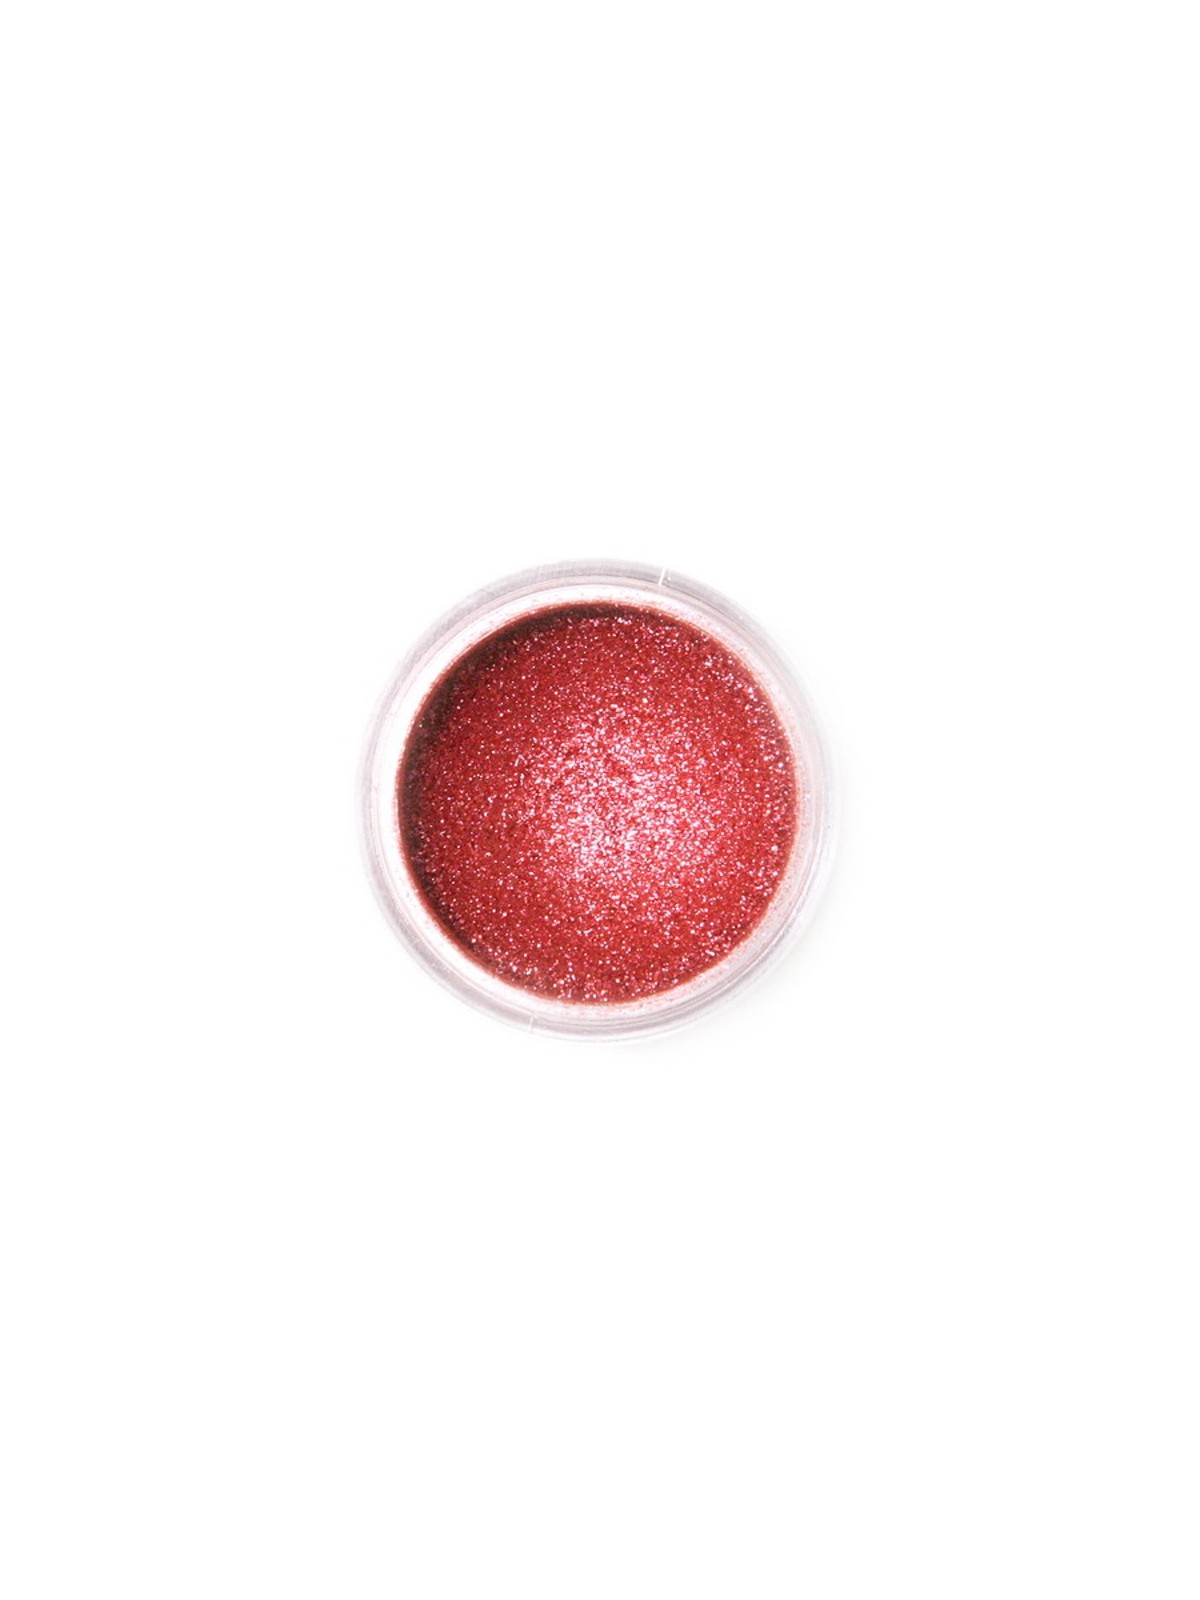 Jedlá prachová perleťová farba Fractal - Sparkling Deep Red, Szikrázó vörös (3,5 g)